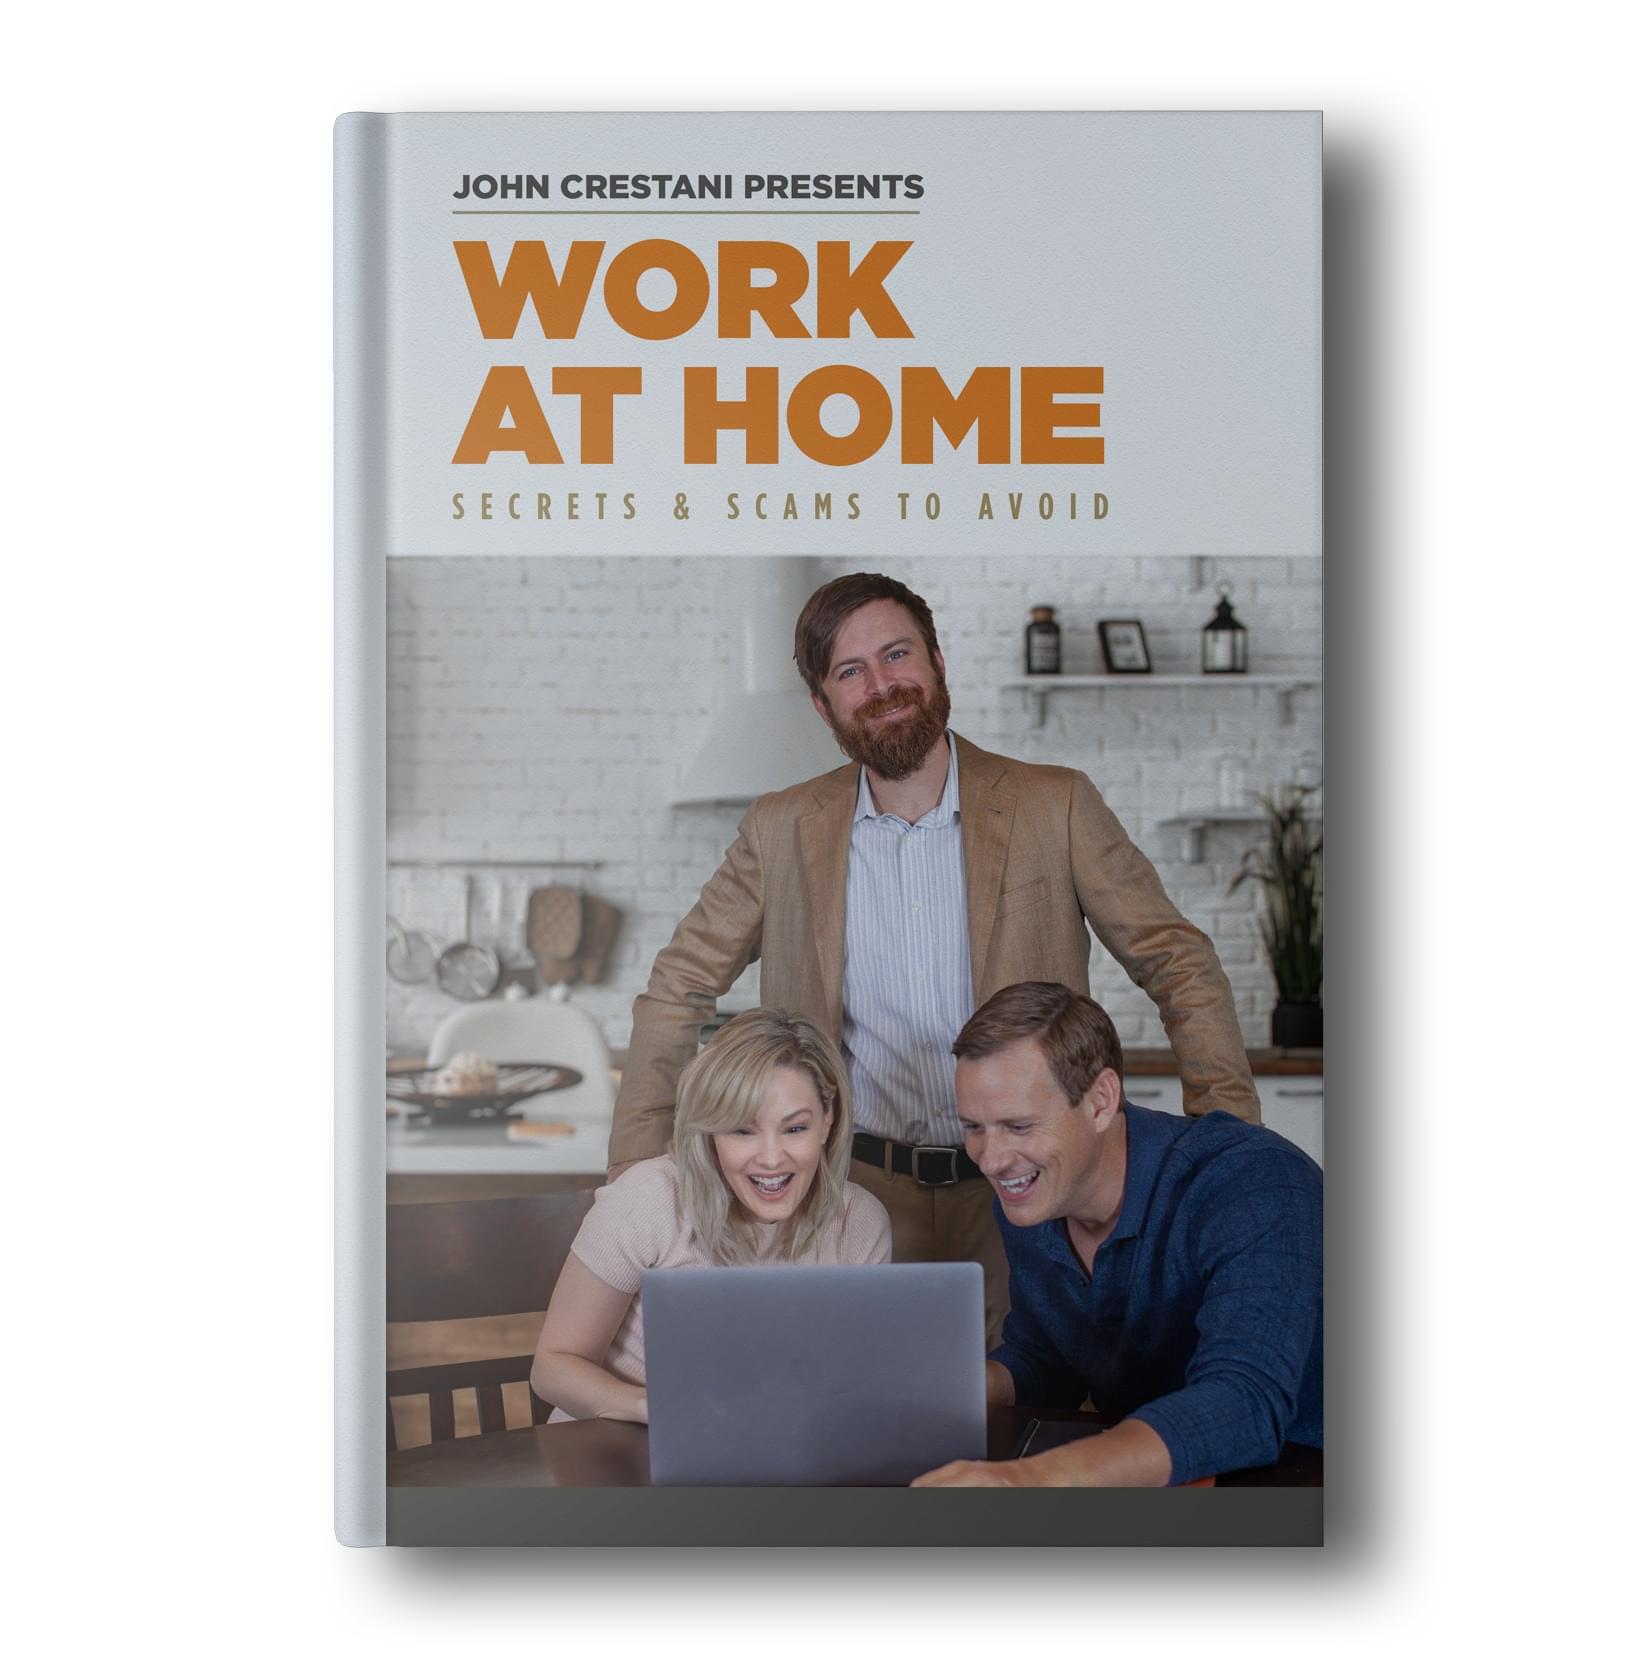 work at home secrets john crestani ebook free download online